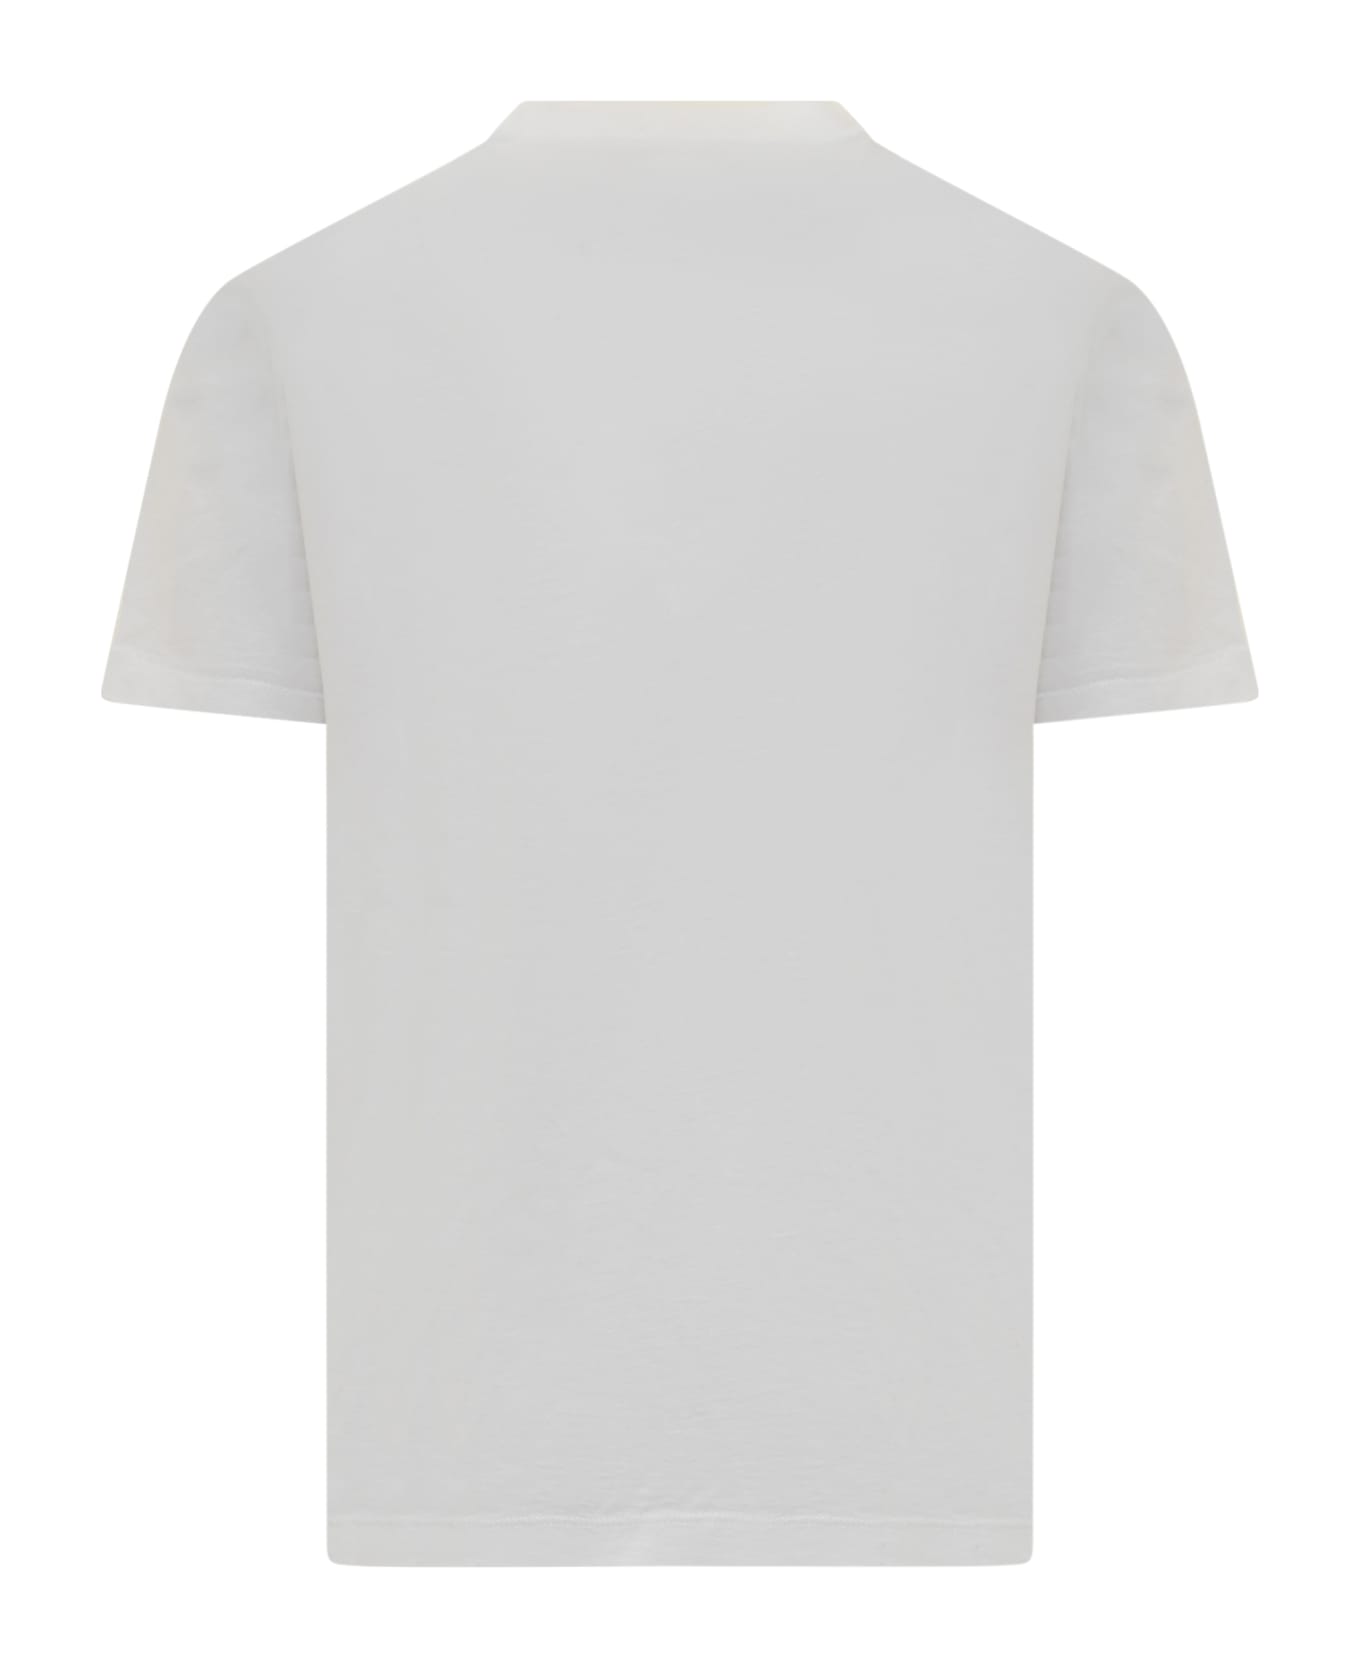 Dsquared2 White Cotton T-shirt - WHITE シャツ